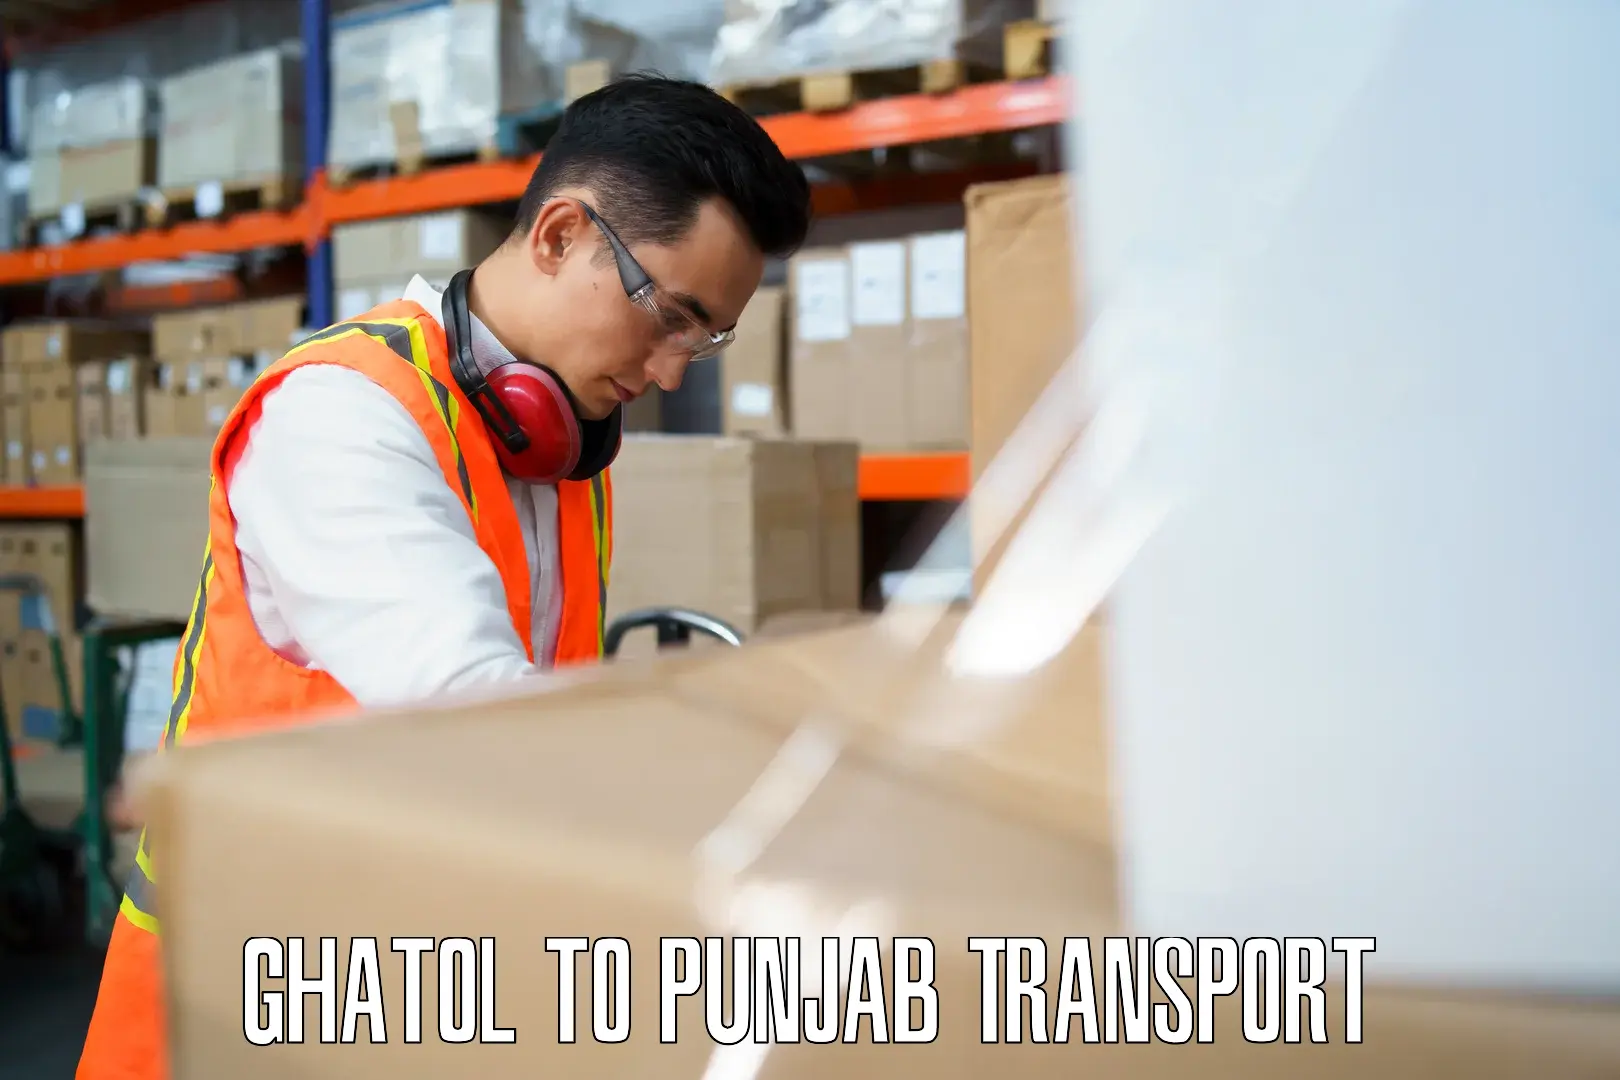 Furniture transport service Ghatol to Punjab